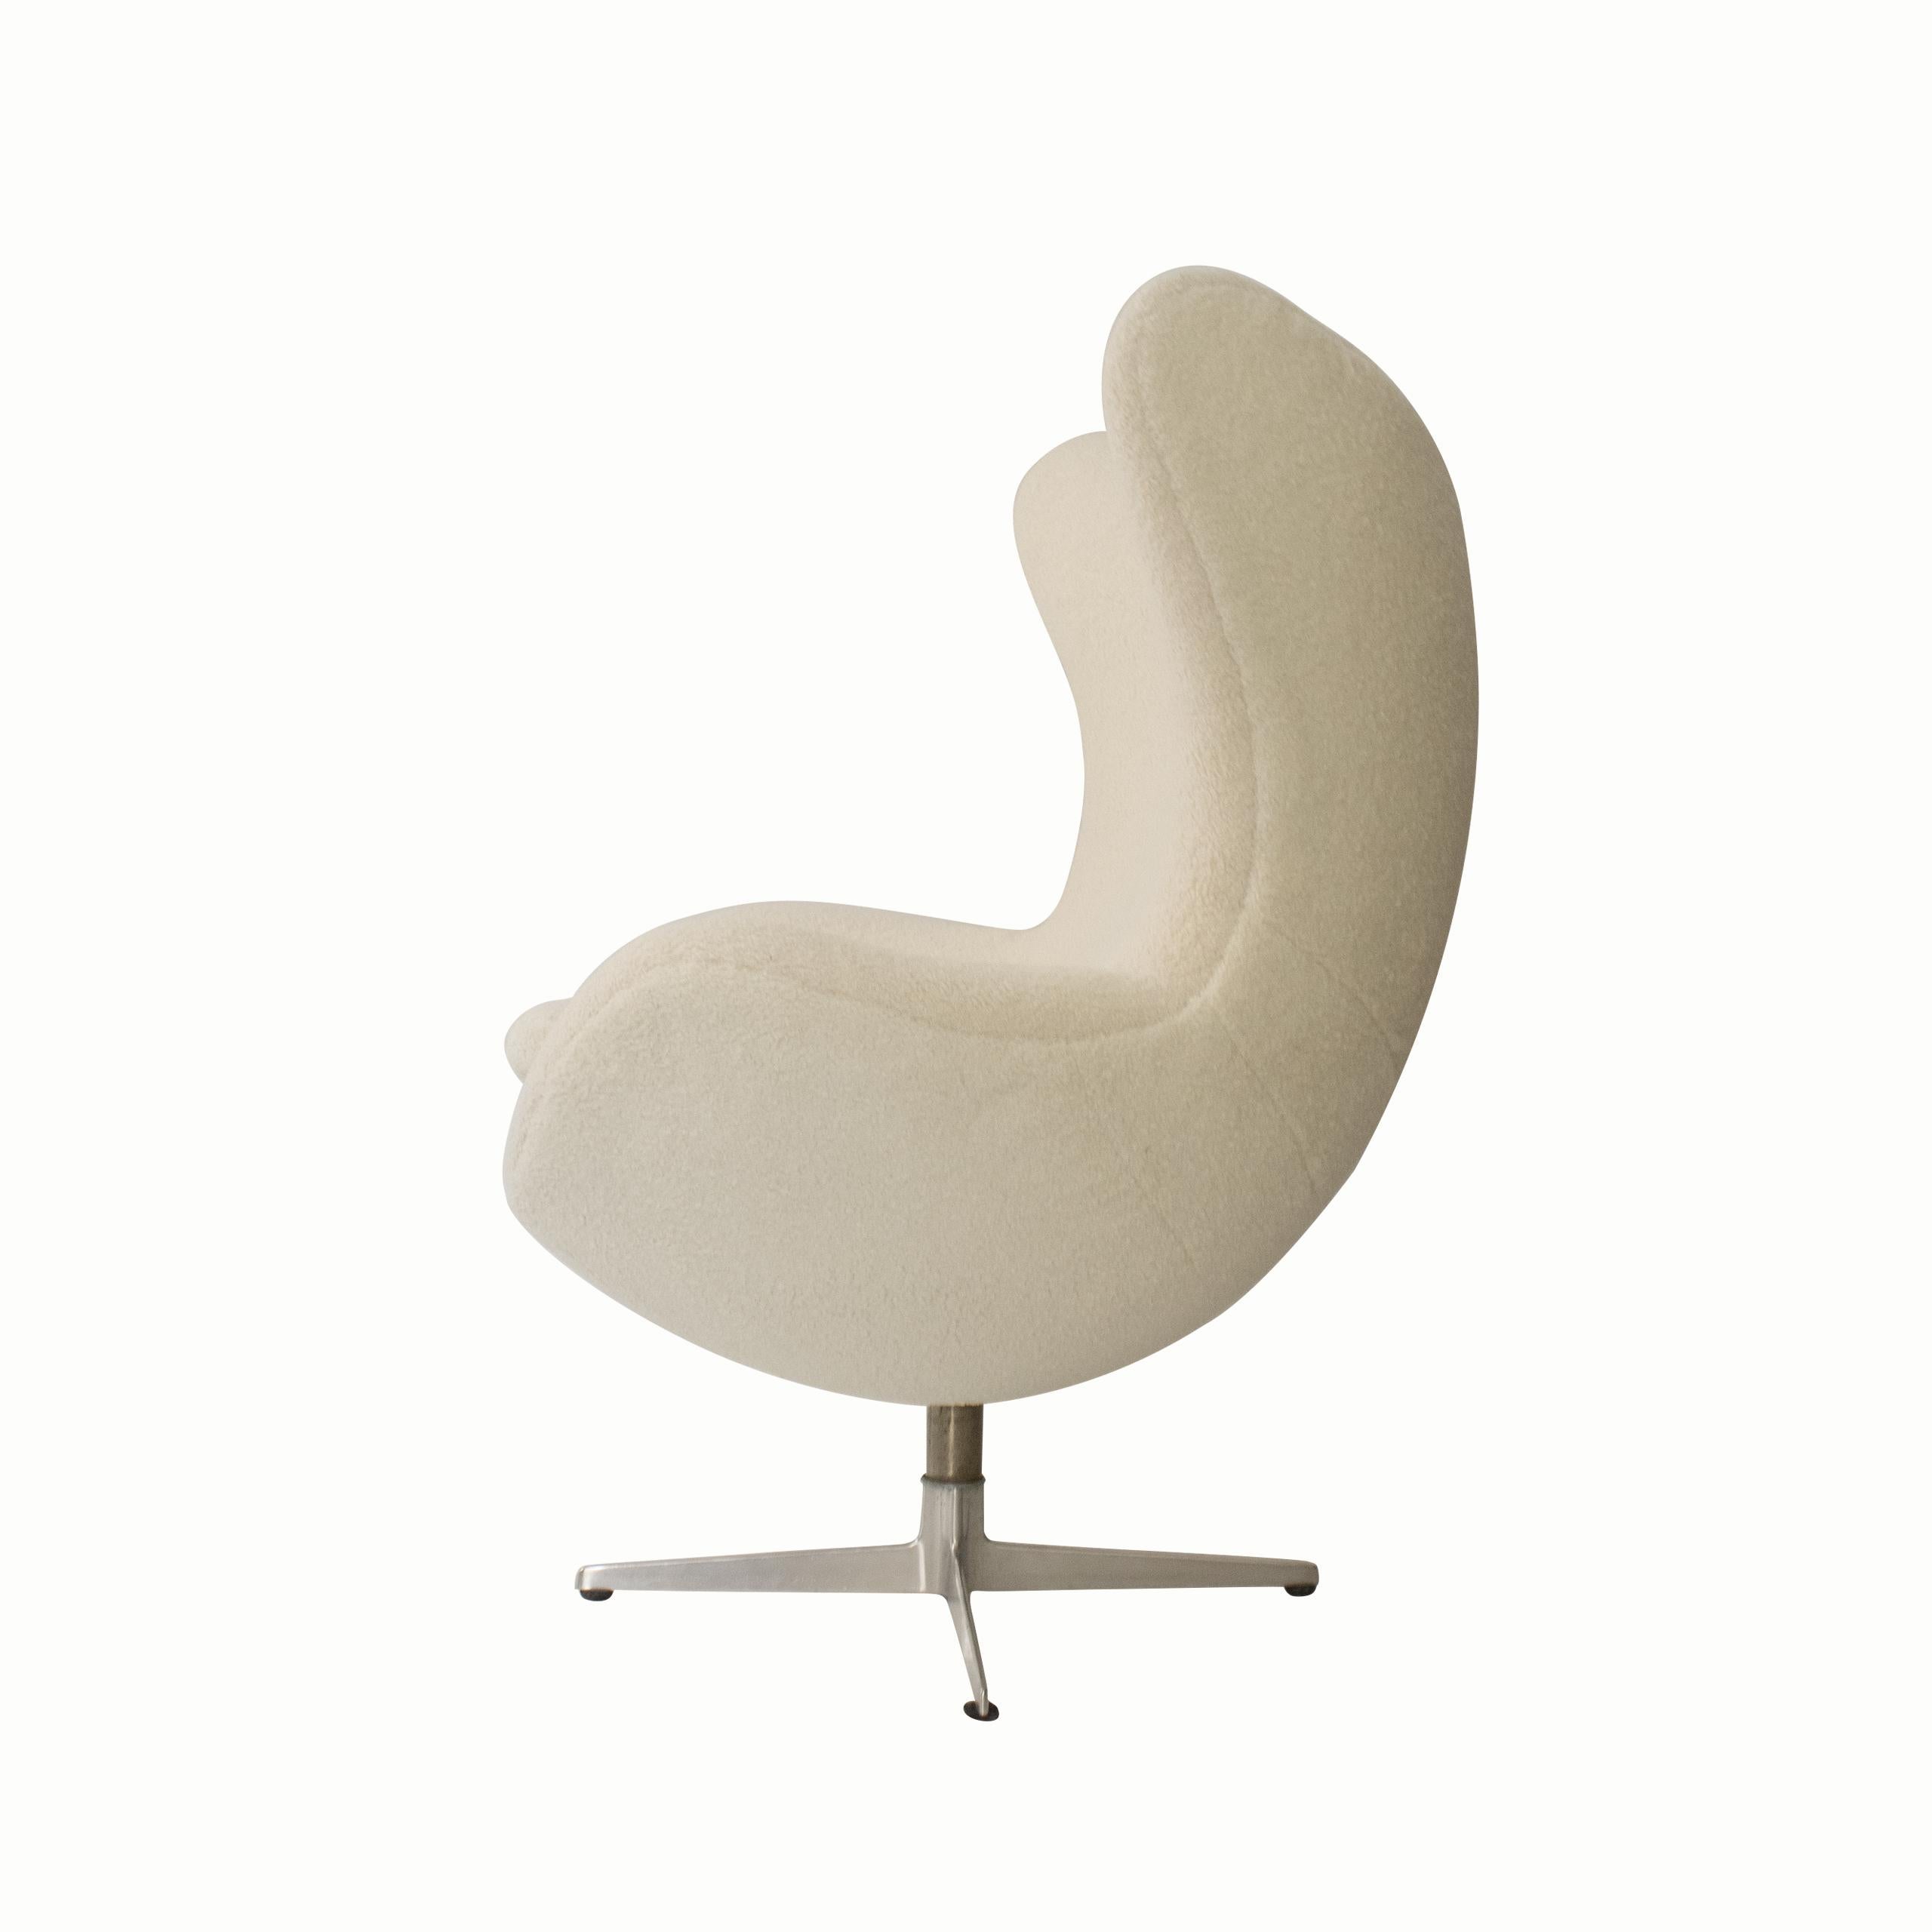 Mid-Century Modern Midcentury Moderen Egg Chair by Arne Jacobsen, Denmark, 1960 For Sale